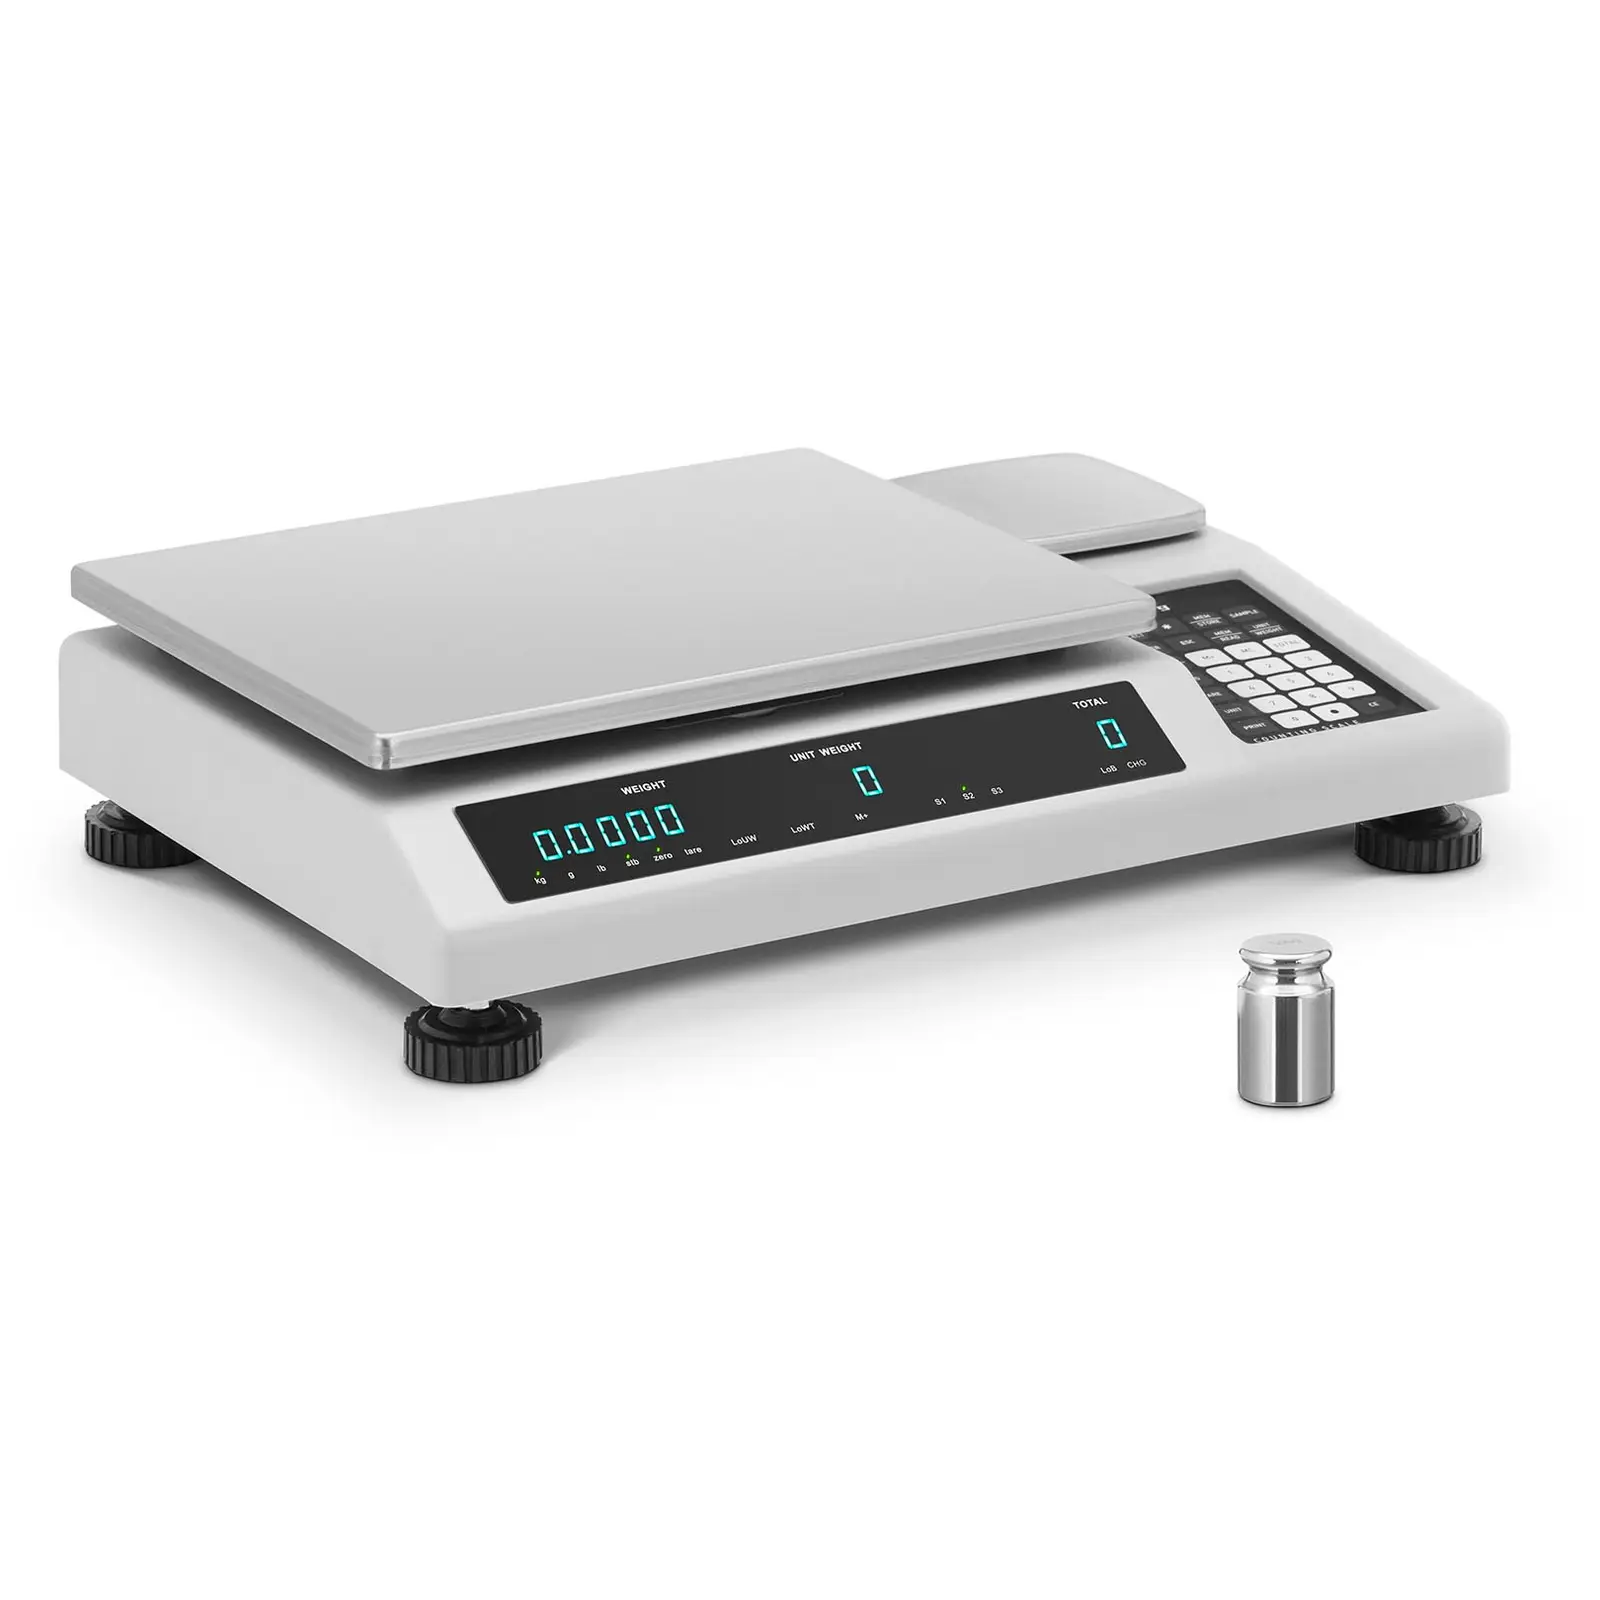 Počítací váha - 25 kg / 0,5 g - s referenční váhou 25 kg / 0,02 g